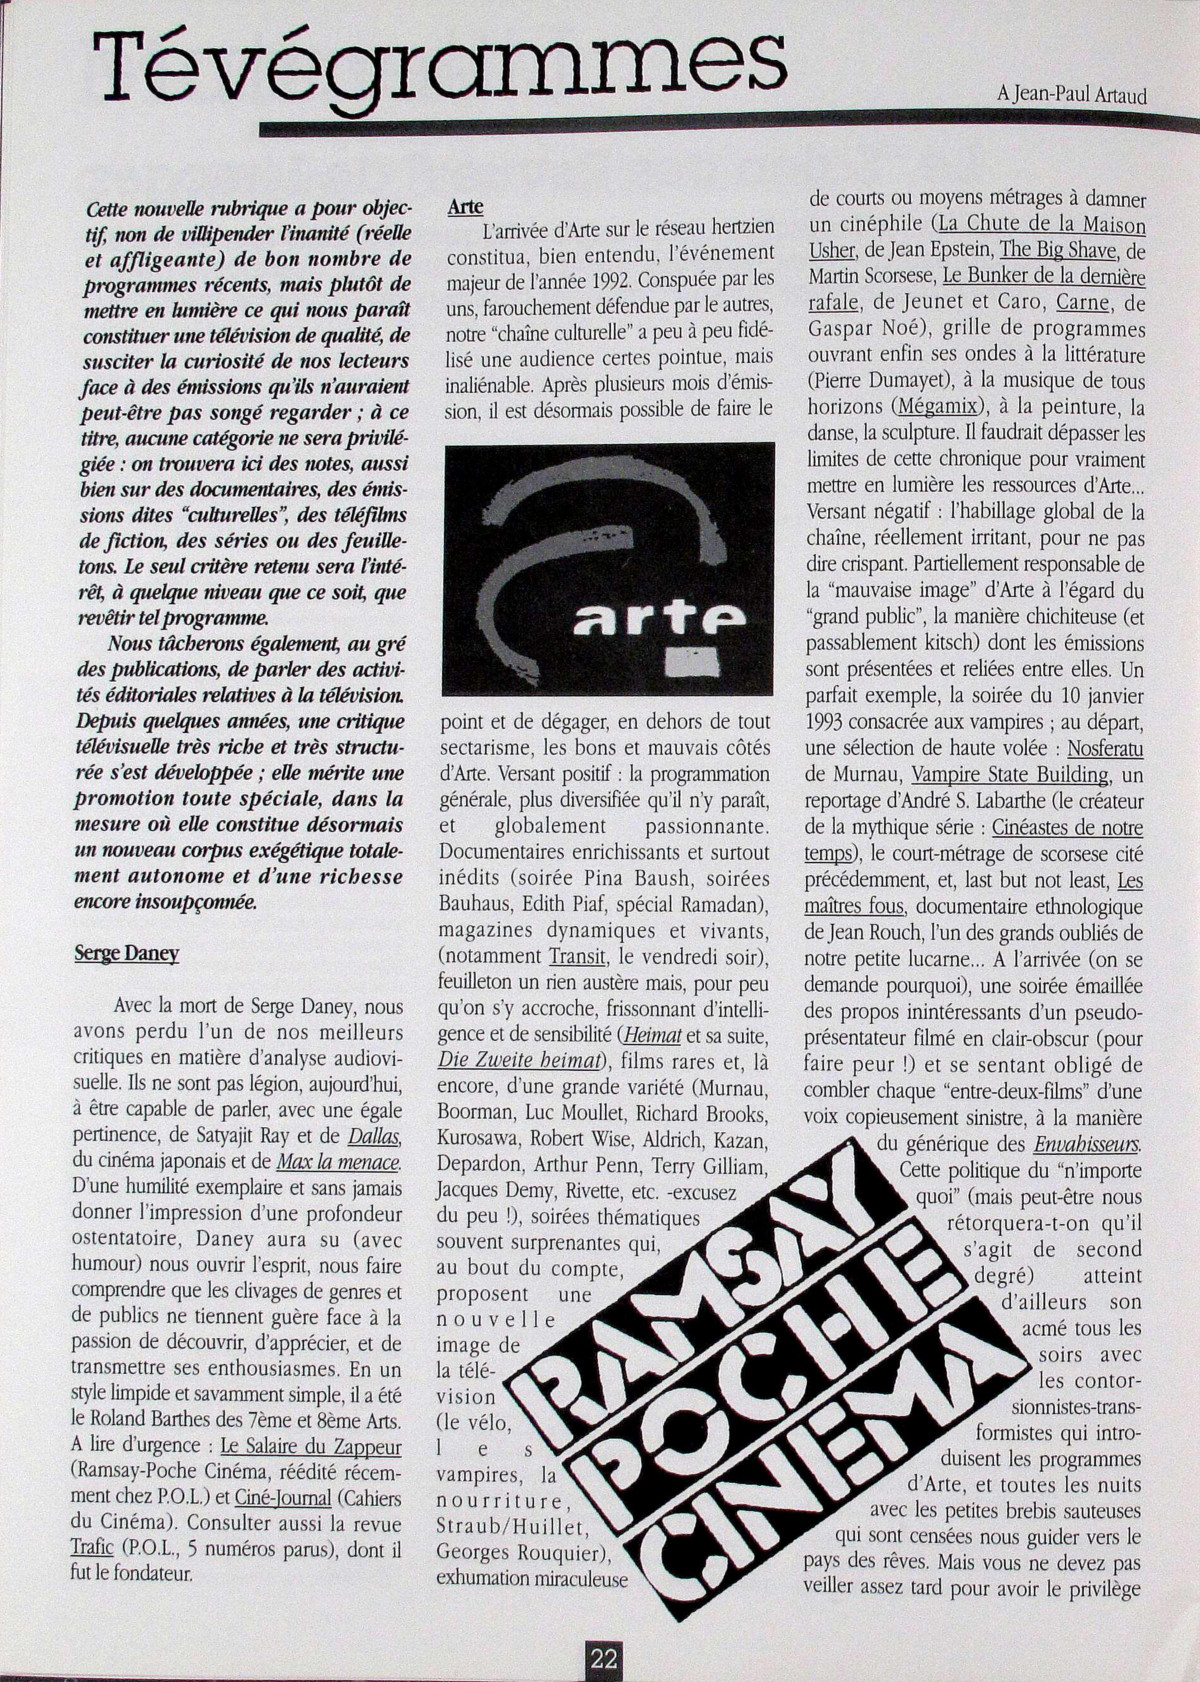 Subculture Été-automne 1993